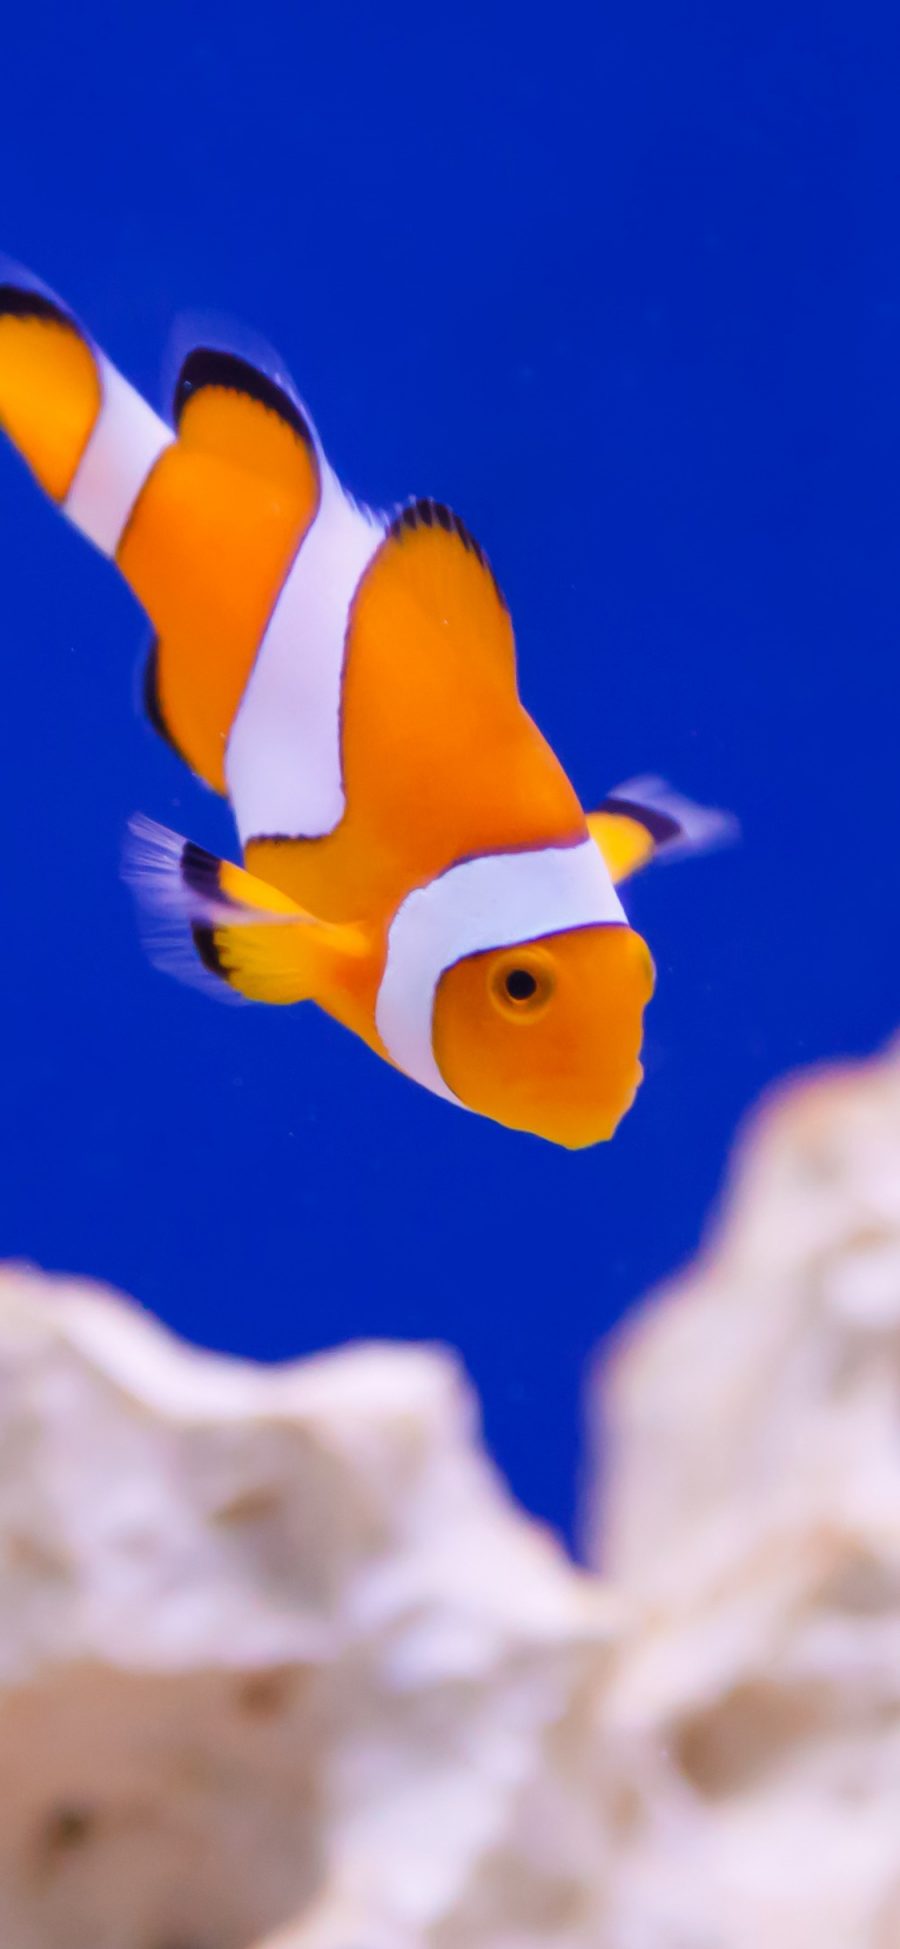 [2436×1125]小丑鱼 鱼类 礁石 海底 苹果手机壁纸图片